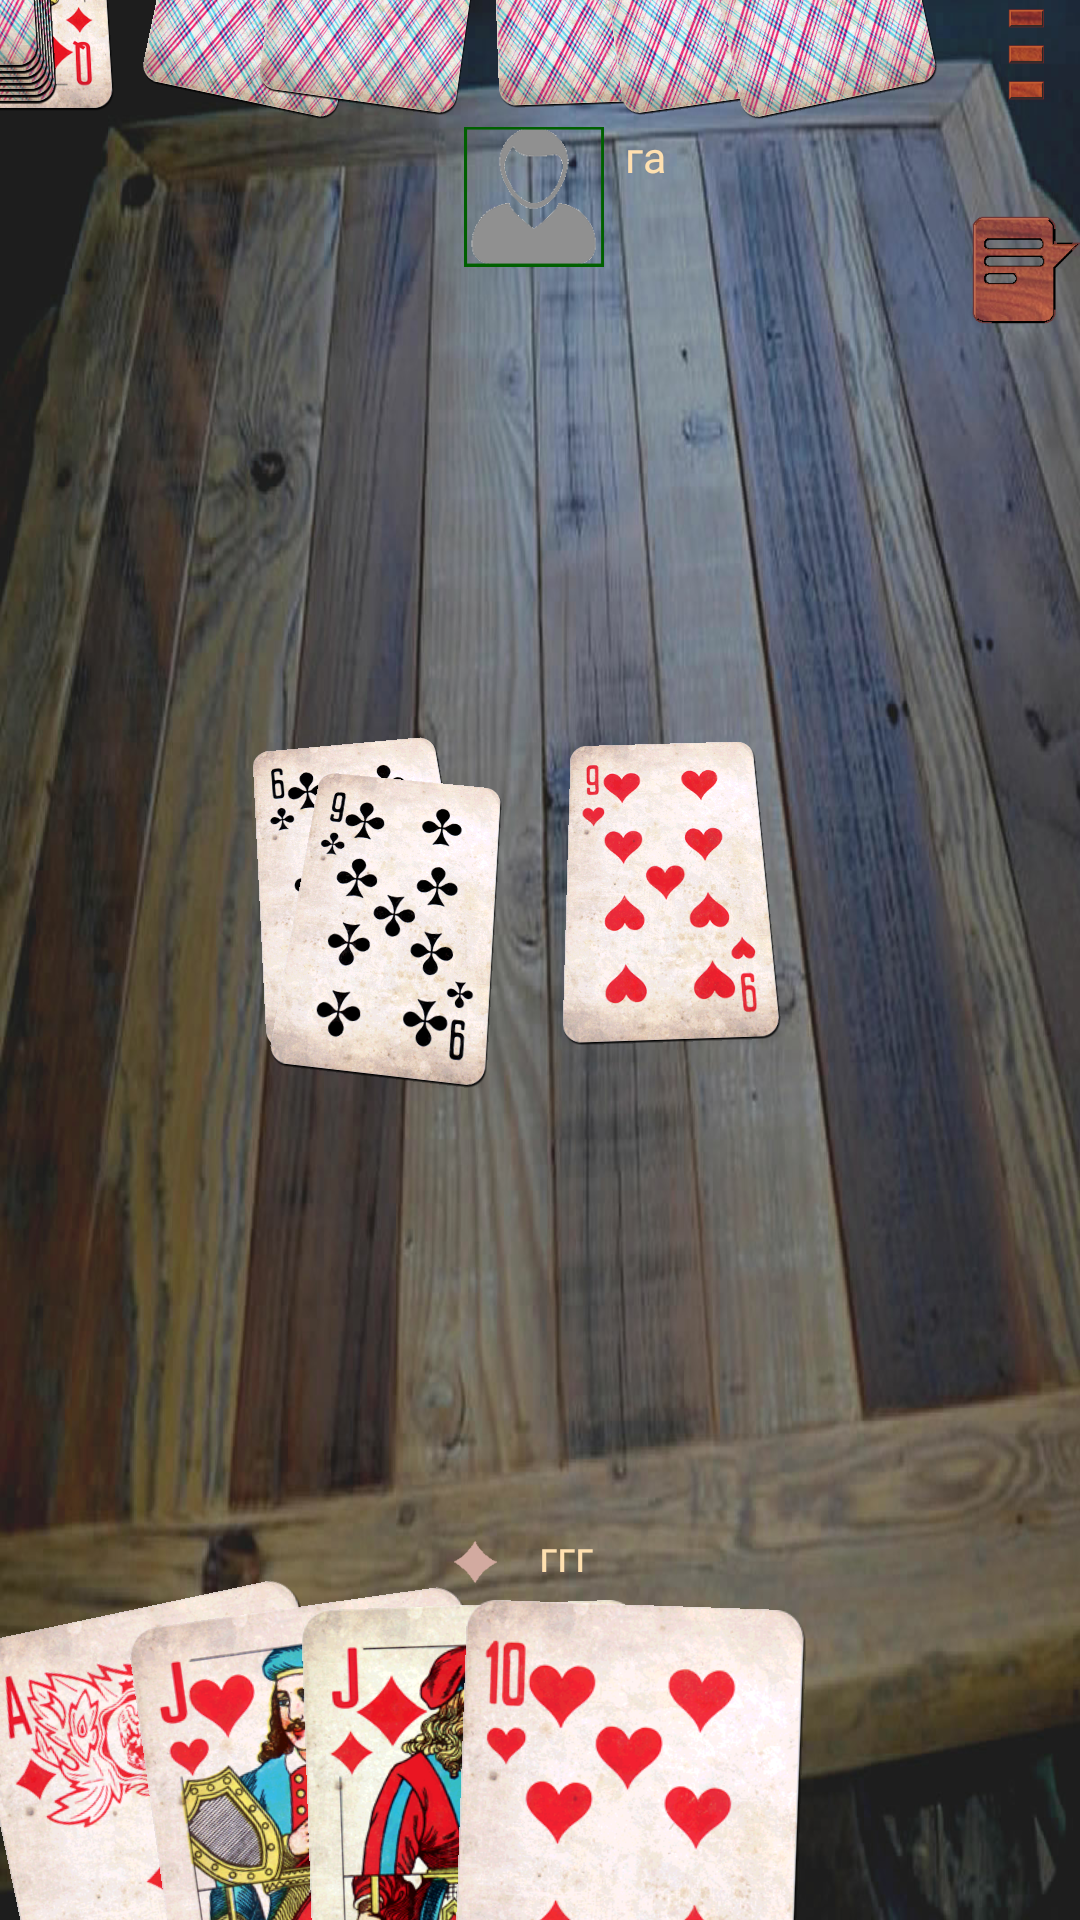 Играть в игру карты на раздевание бесплатно на как играть на тт на всех картах